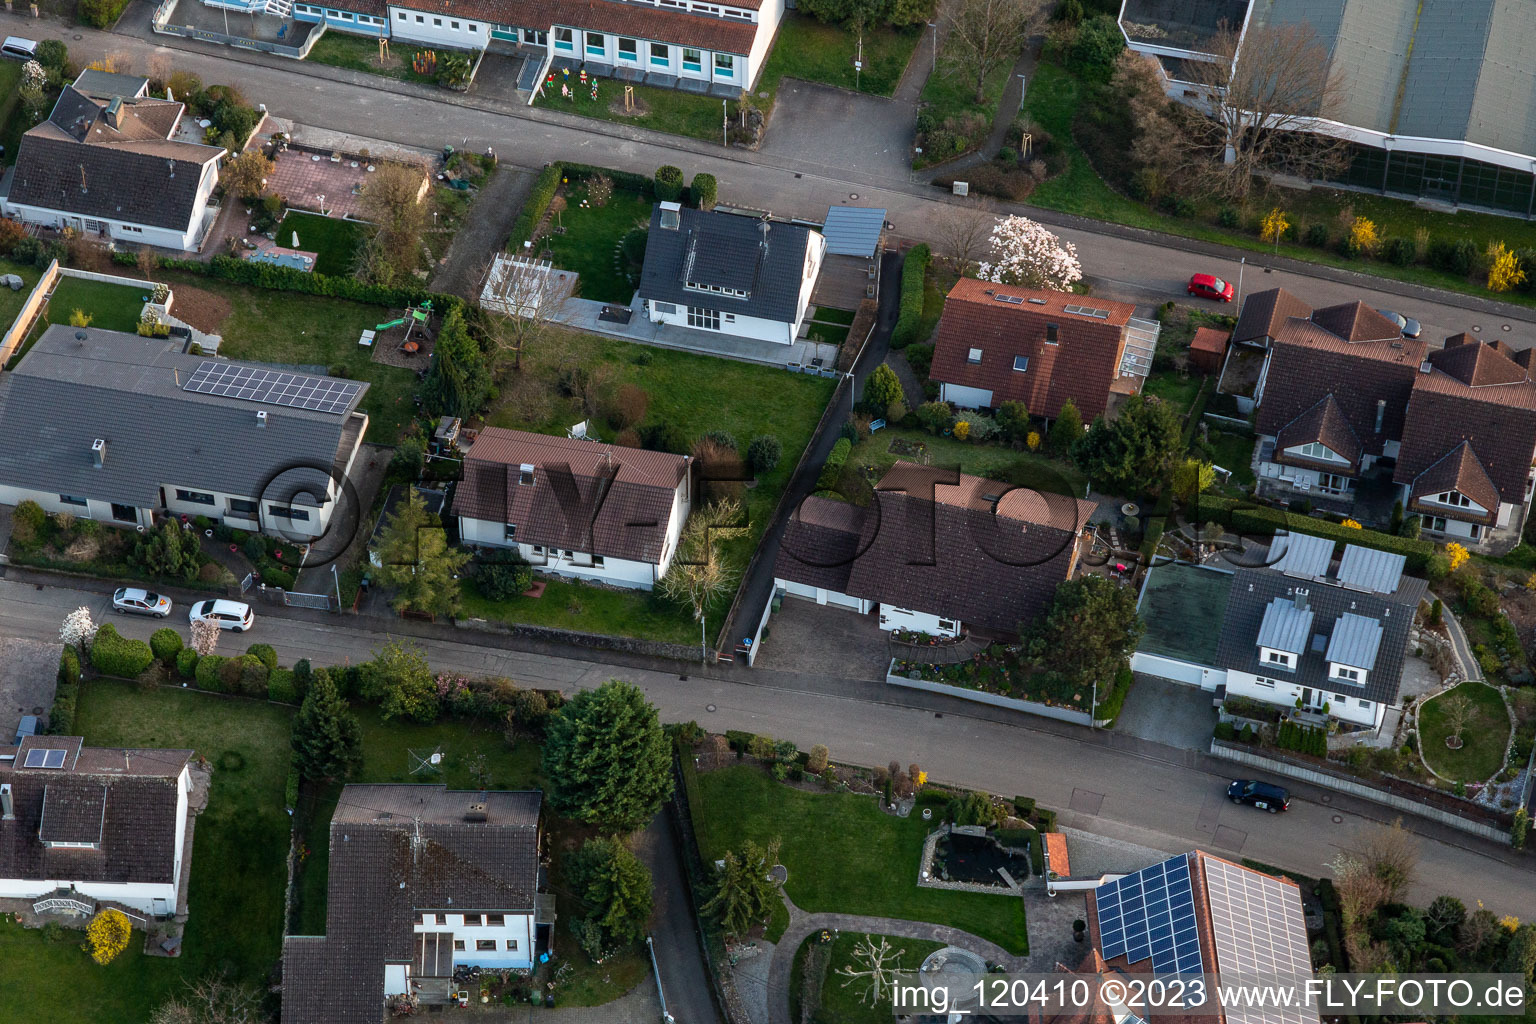 Ortsteil Fessenbach in Offenburg im Bundesland Baden-Württemberg, Deutschland aus der Drohnenperspektive